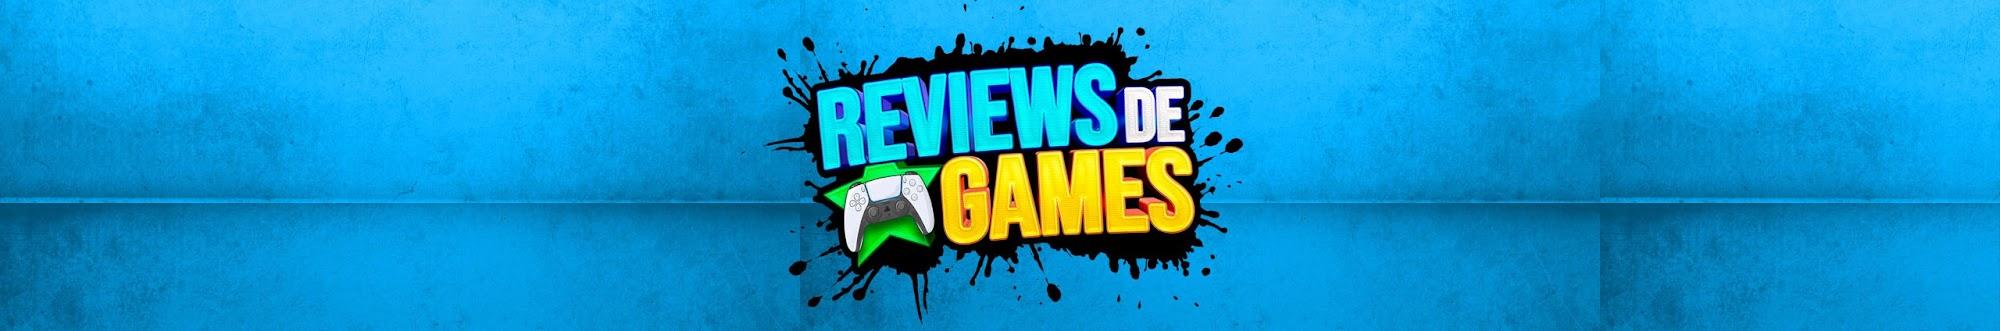 Reviews de Games